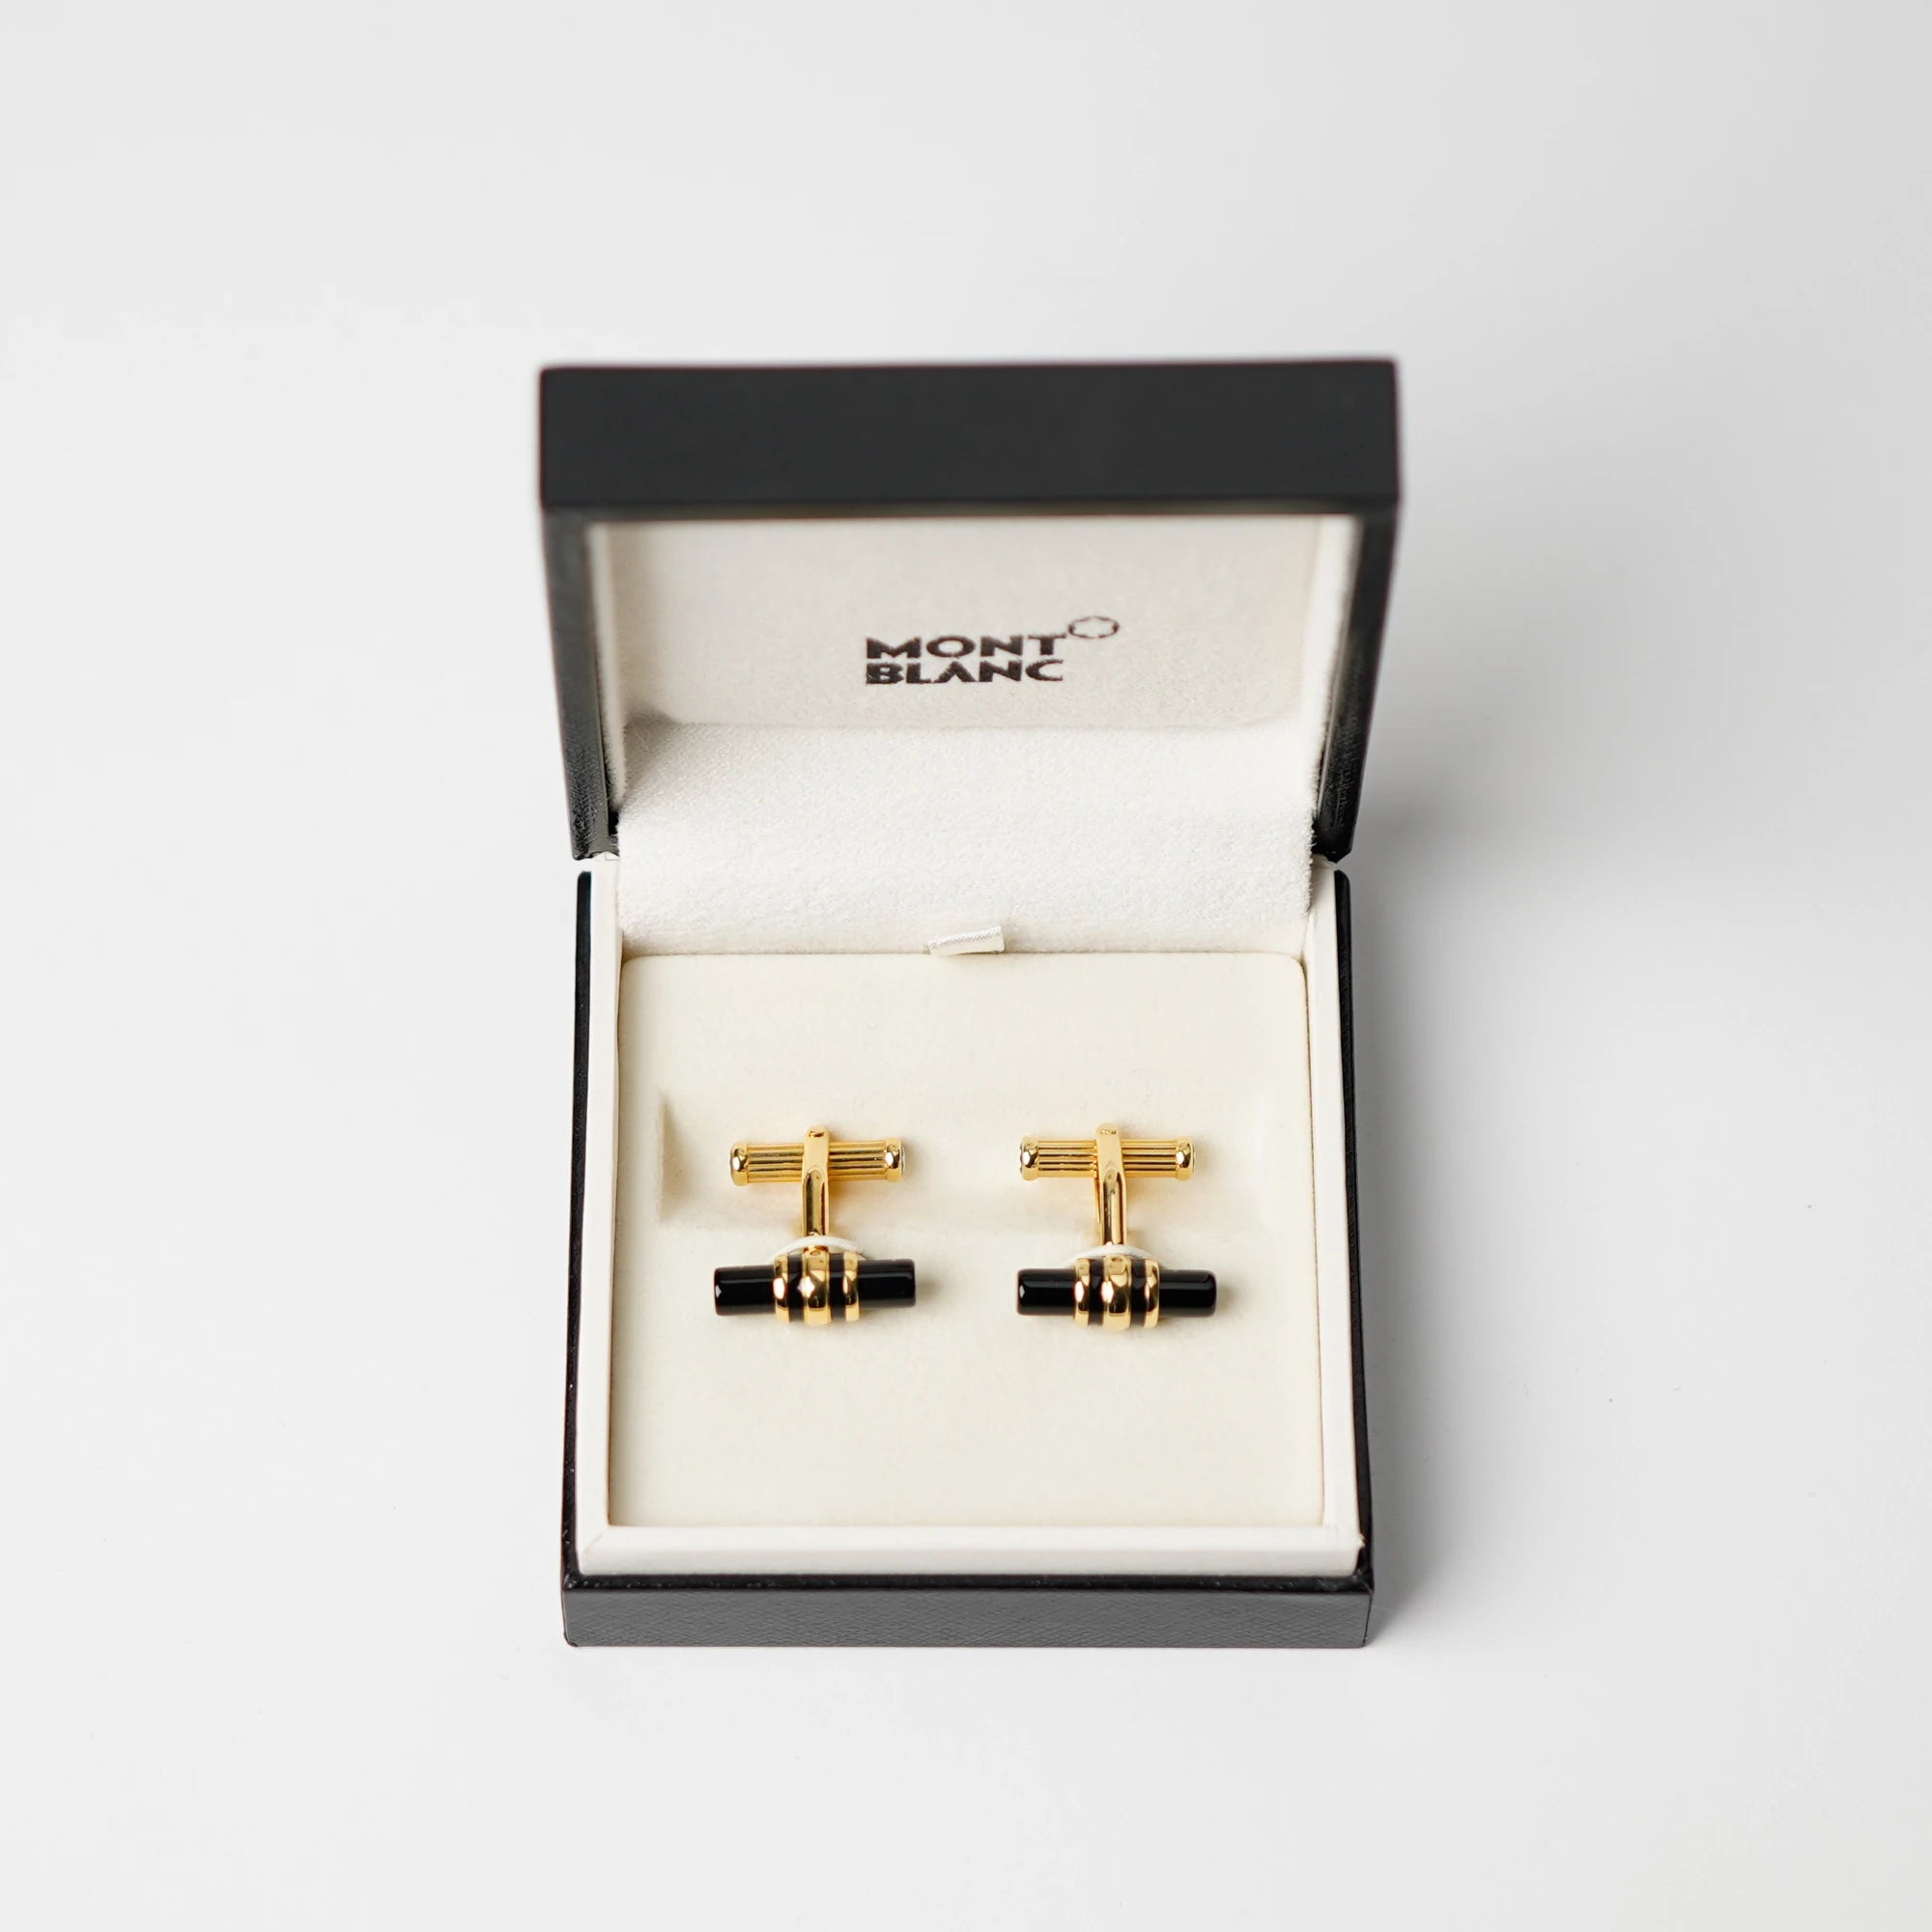 Gold-plattinierten Manschettenknöpfe Elegance Bar 3 mit Onyx-Stift liegen in der originalen Mont Blanc Schachtel